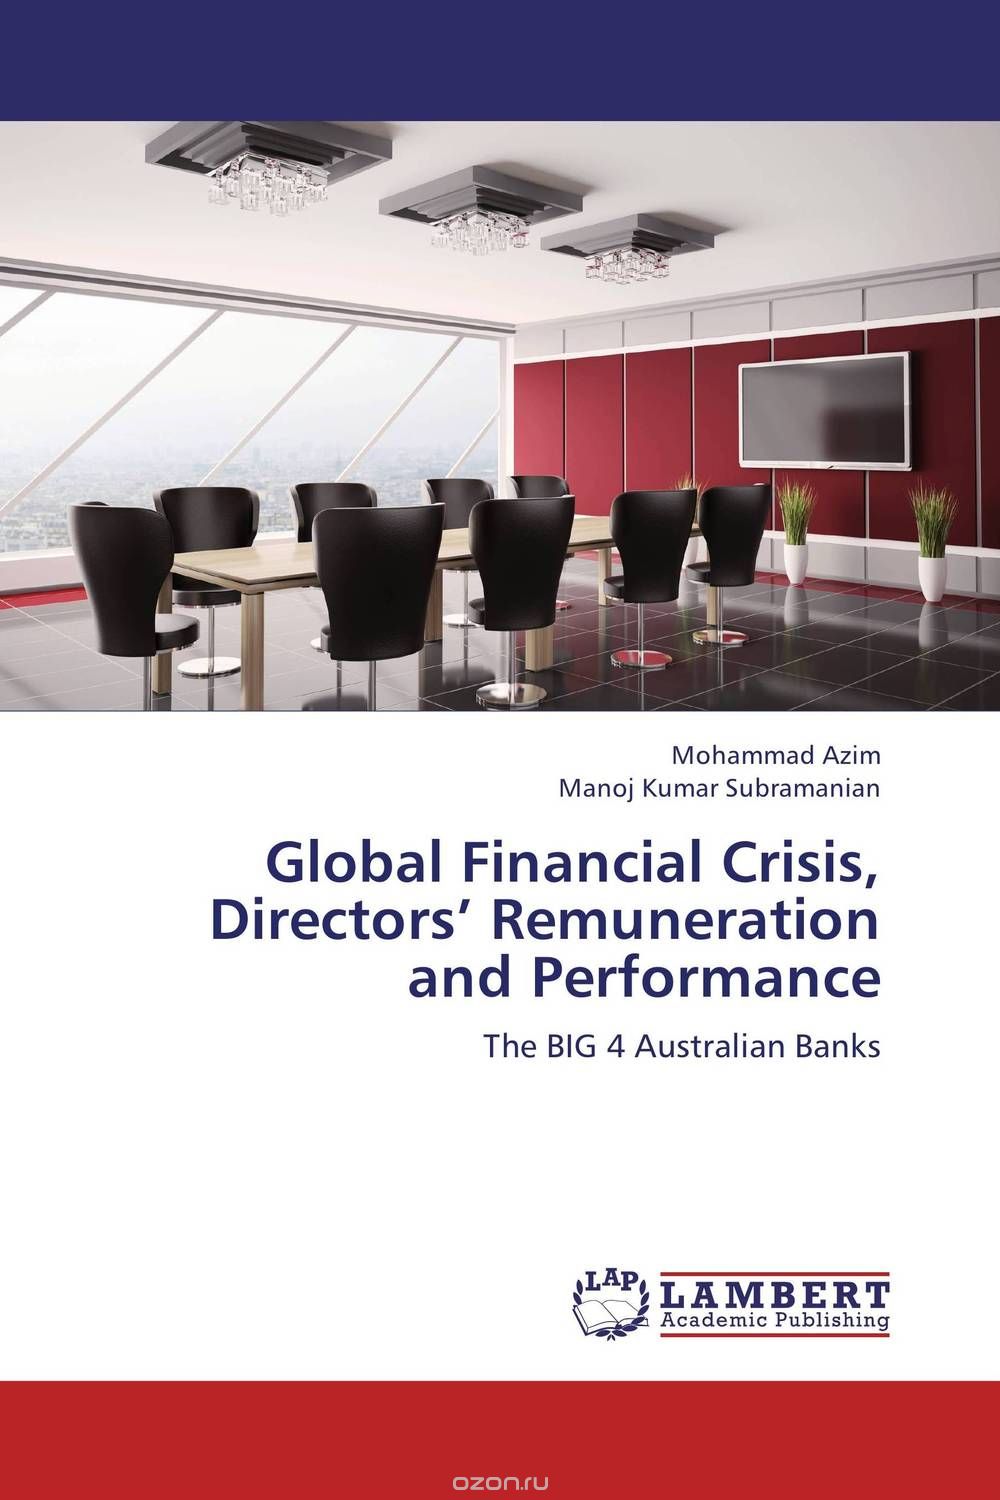 Скачать книгу "Global Financial Crisis, Directors’ Remuneration and Performance"